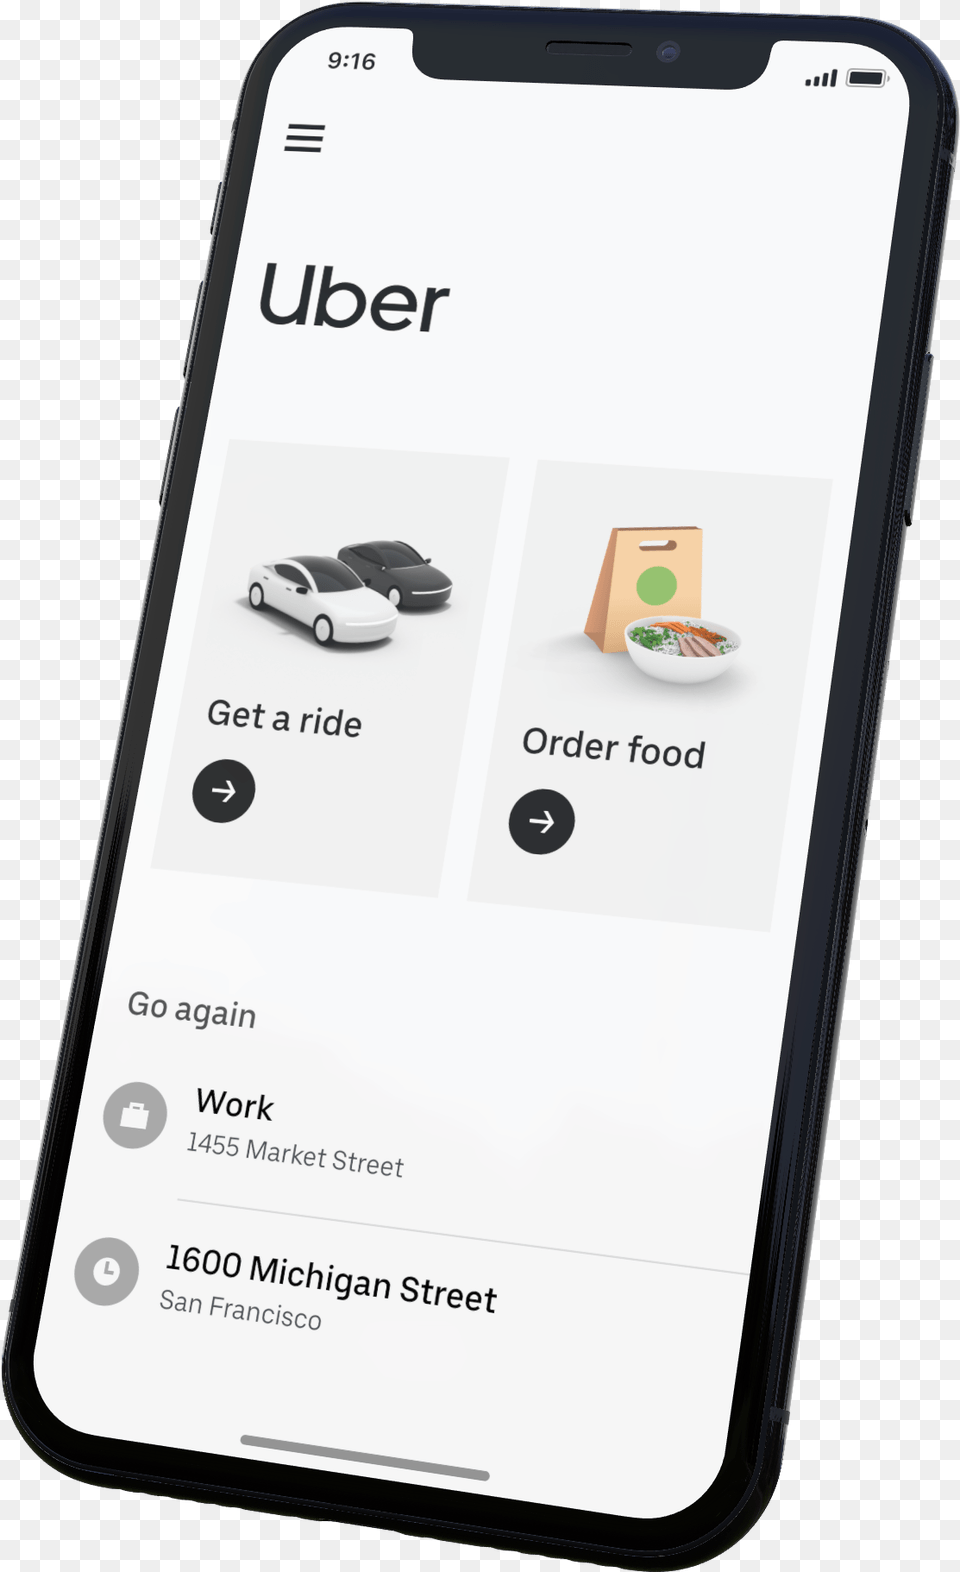 Uber App V2 Uber App, Electronics, Mobile Phone, Phone, Car Free Png Download